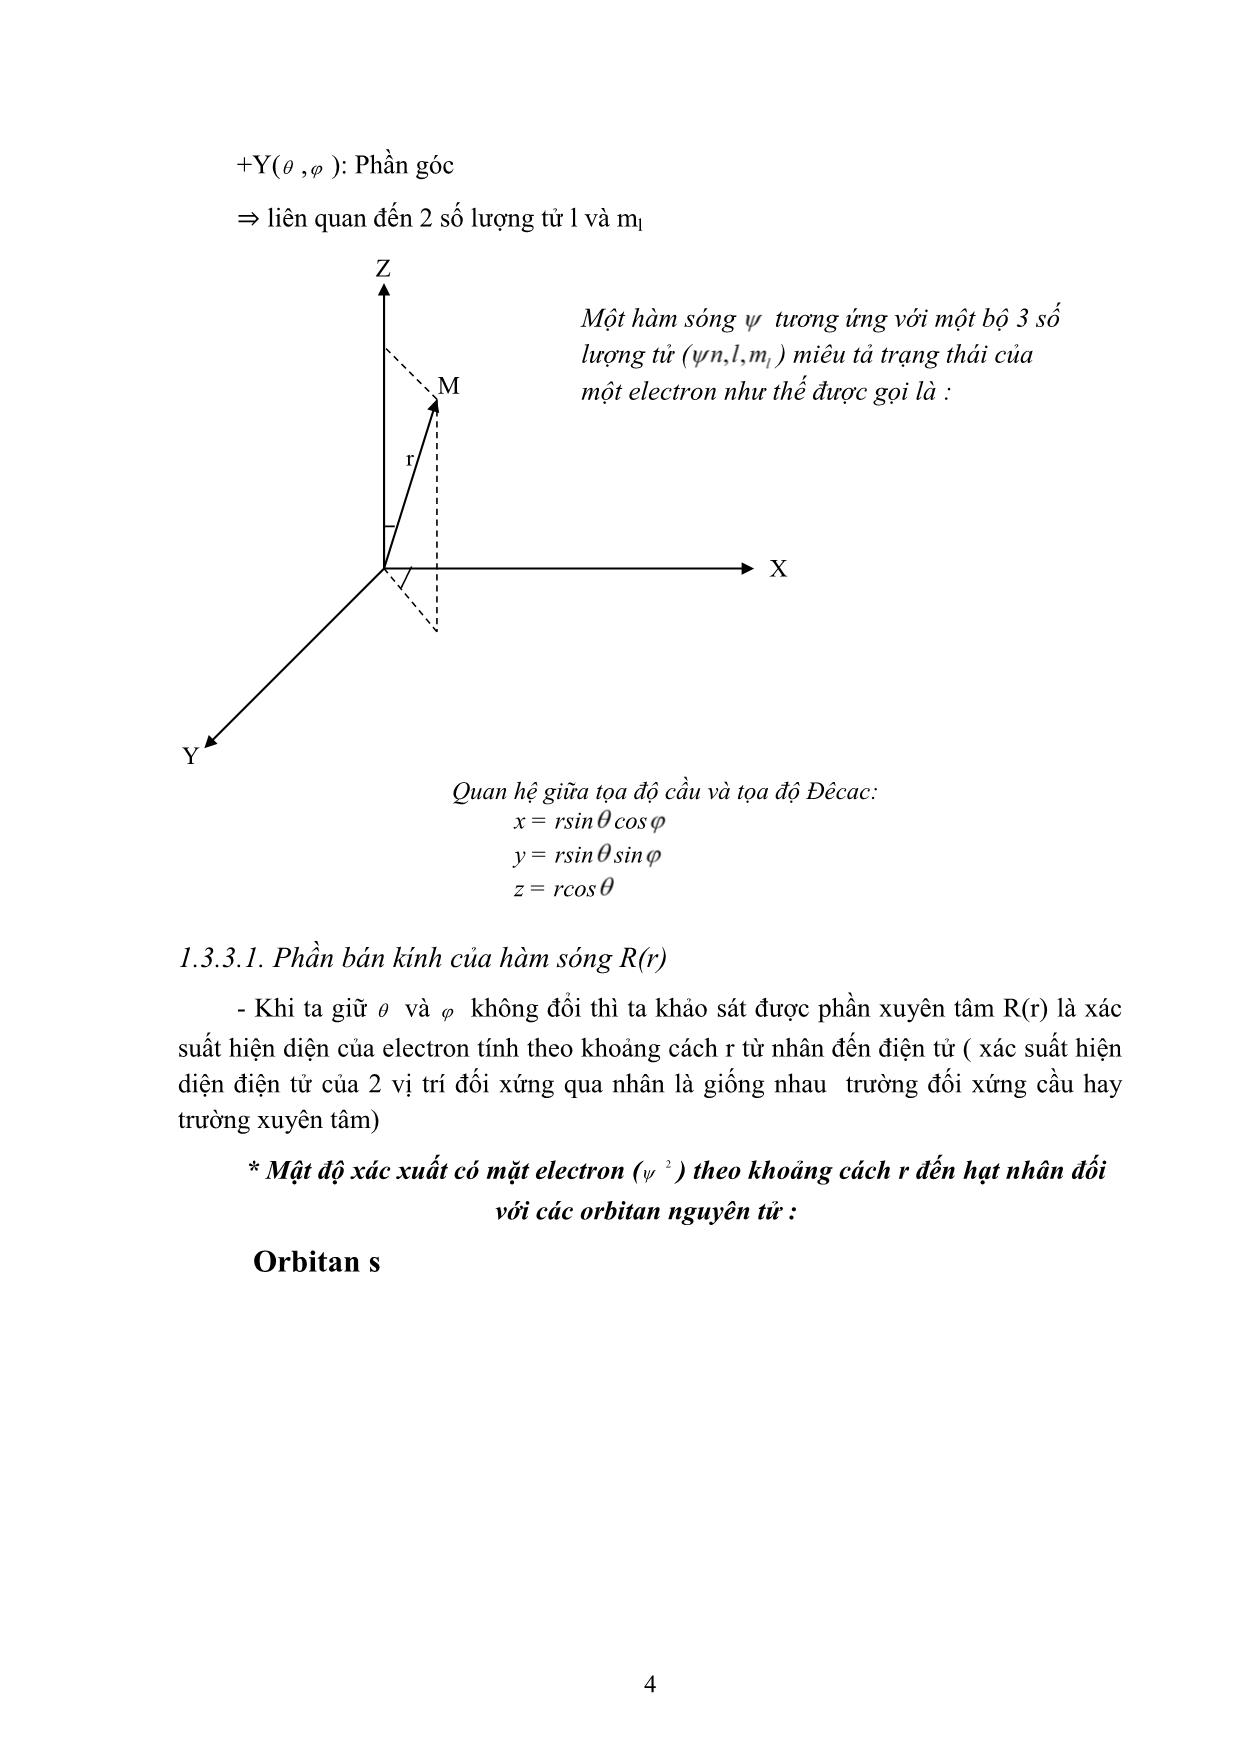 Bài giảng Hóa học đại cương A - Hoàng Hải Hậu (Phần 1) trang 9